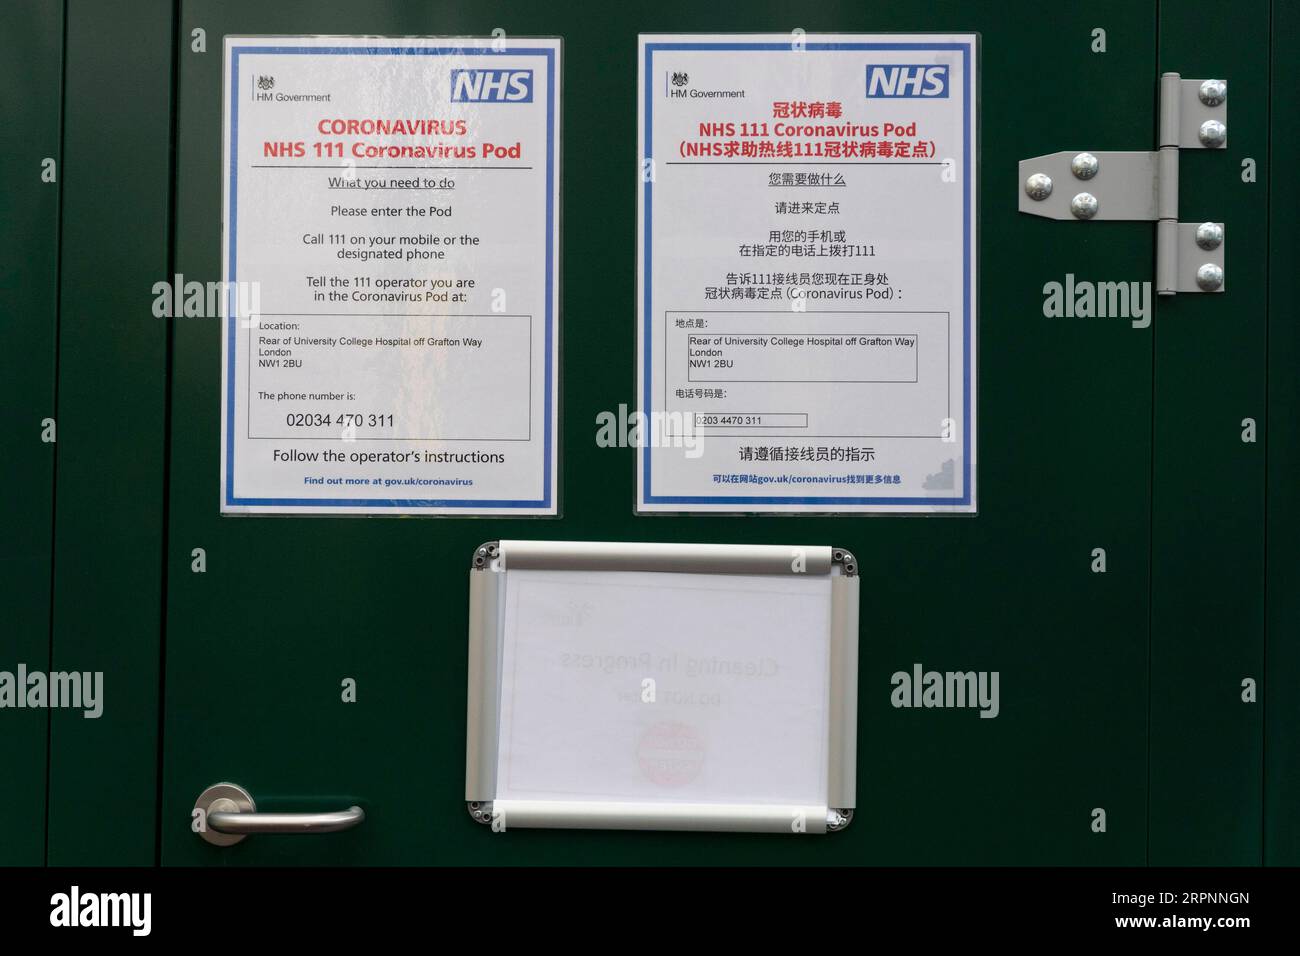 200302 -- LONDRES, le 2 mars 2020 -- une photo prise le 2 mars 2020 montre des panneaux sur un module de coronavirus NHS 111 du National Health Service positionné à l'University College Hospital de Londres, en Grande-Bretagne. Photo de /Xinhua BRITAIN-LONDON-CORONAVIRUS POD RayxTang PUBLICATIONxNOTxINxCHN Banque D'Images